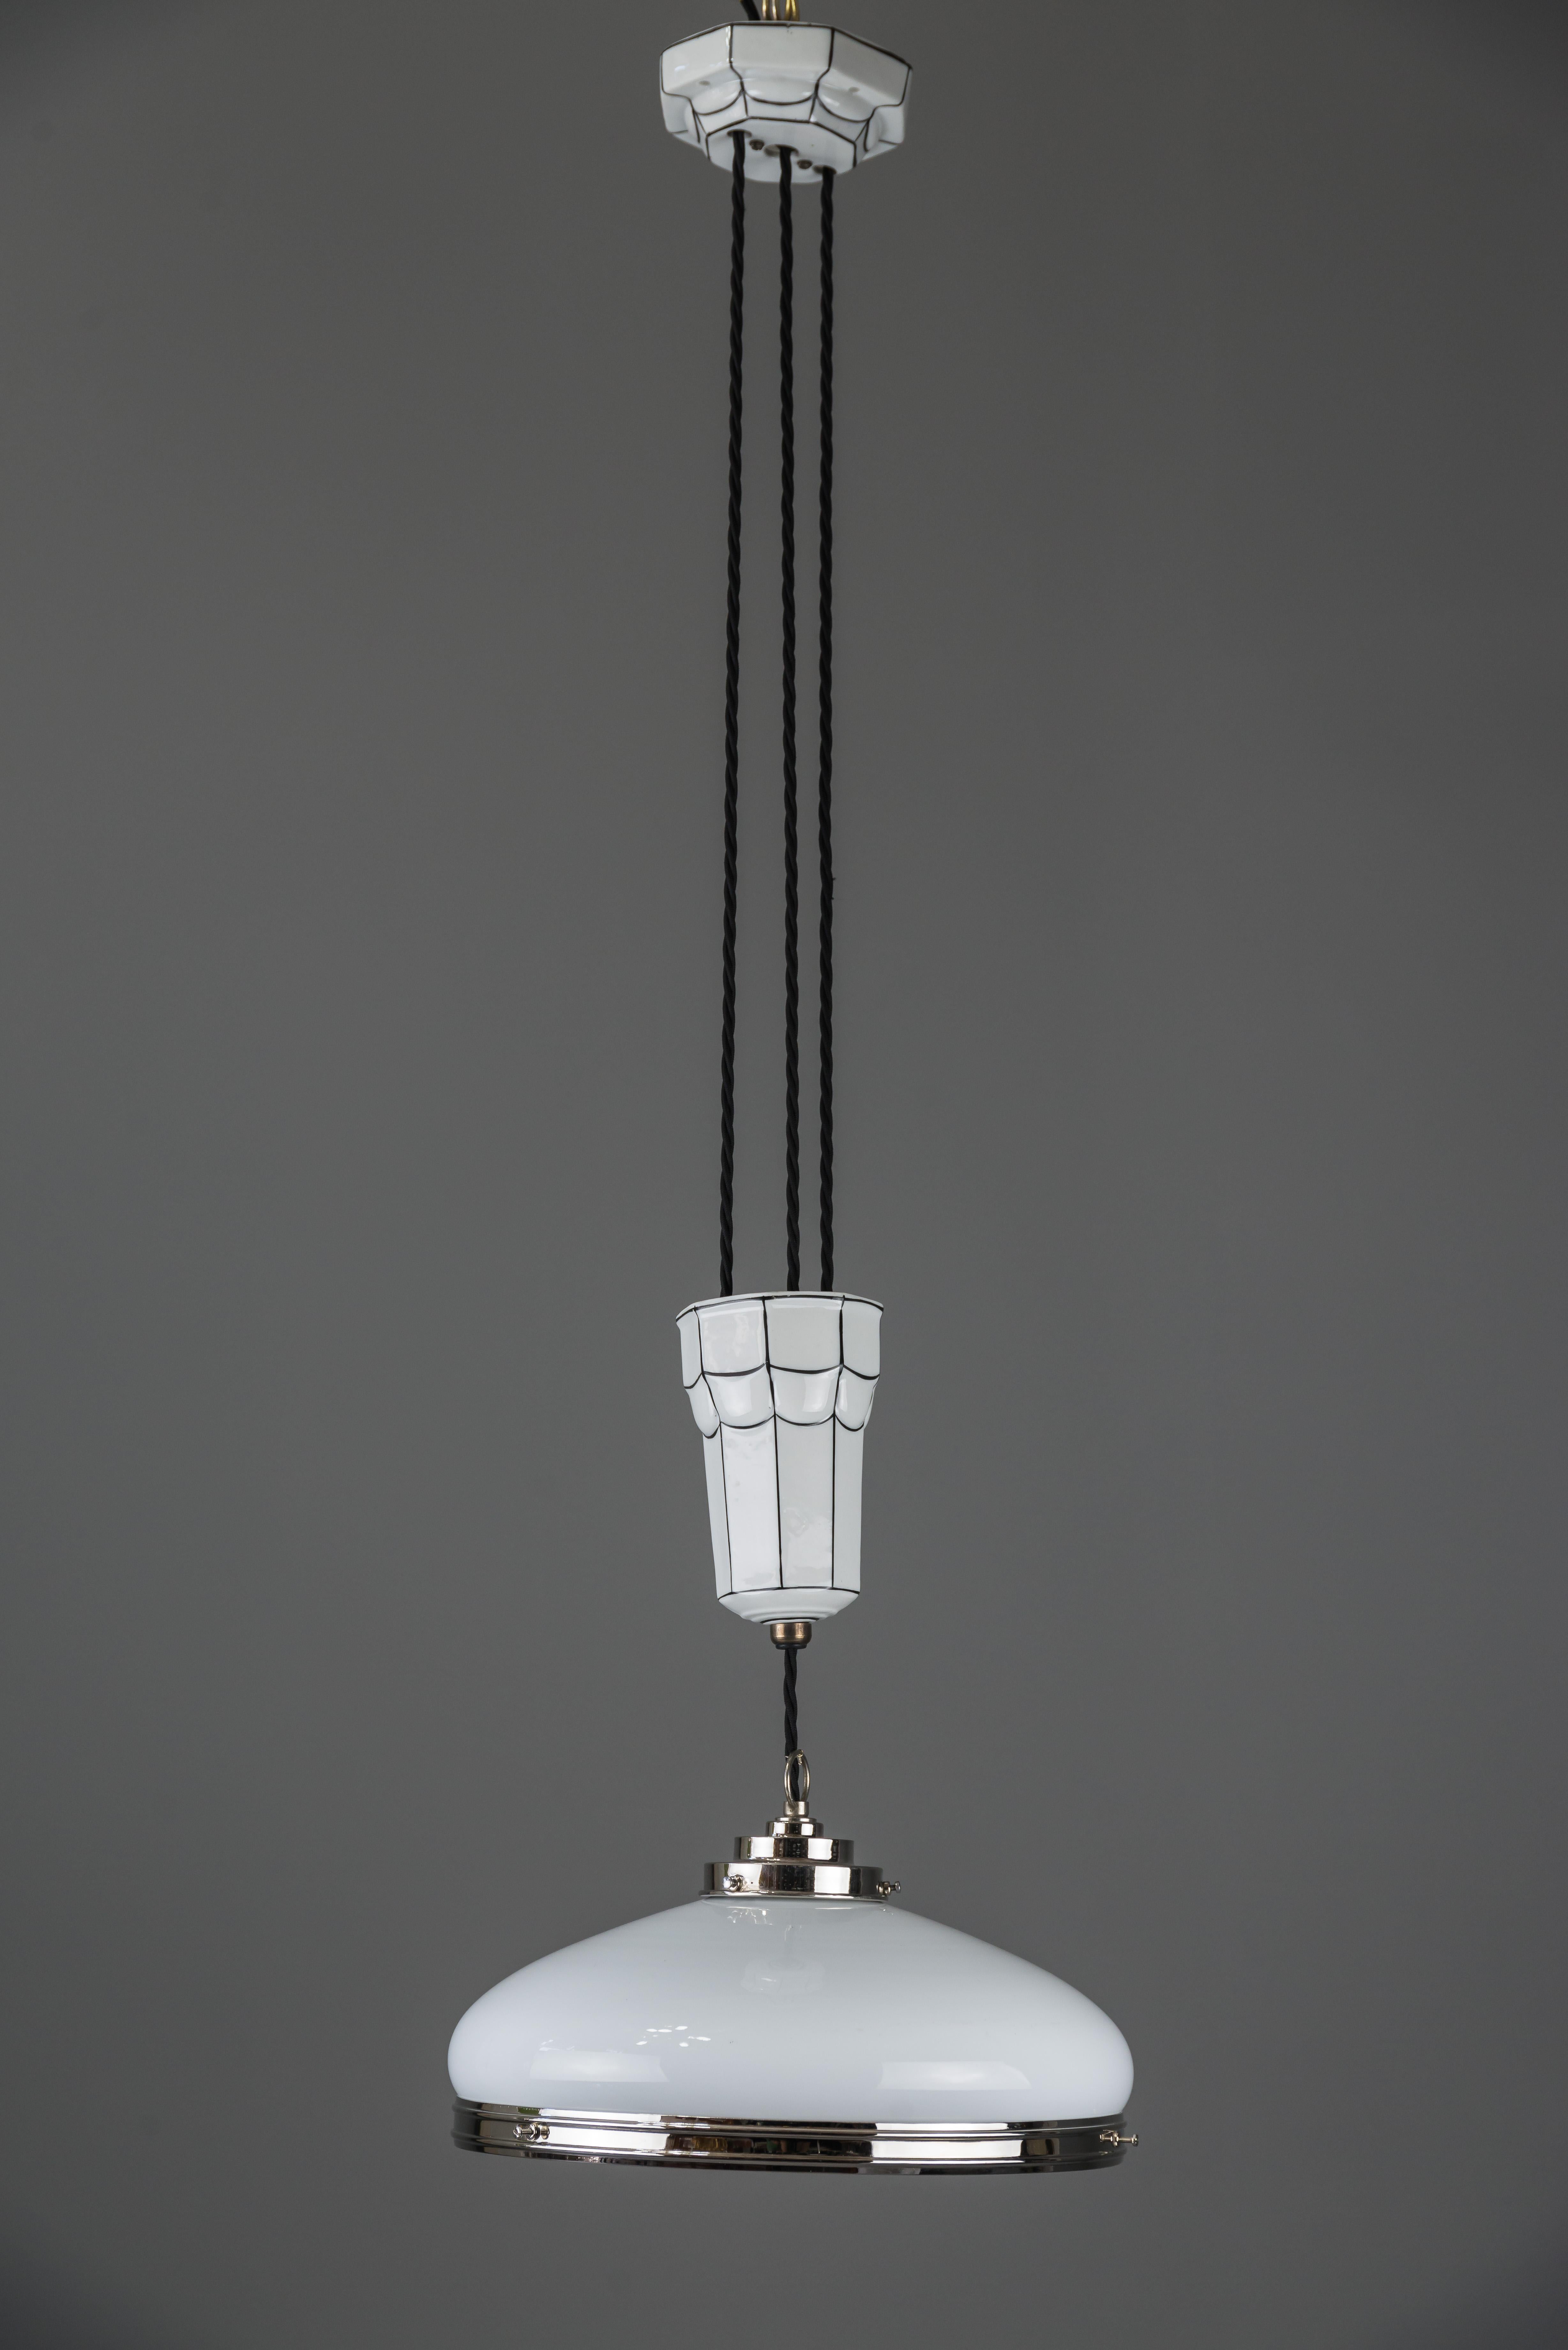 Lustre réglable Art Déco 1920 par Bauhaus
Porcelaine et verre
Nickelé
Teinte originale
La hauteur est réglable de 102 cm à 190 cm.
   